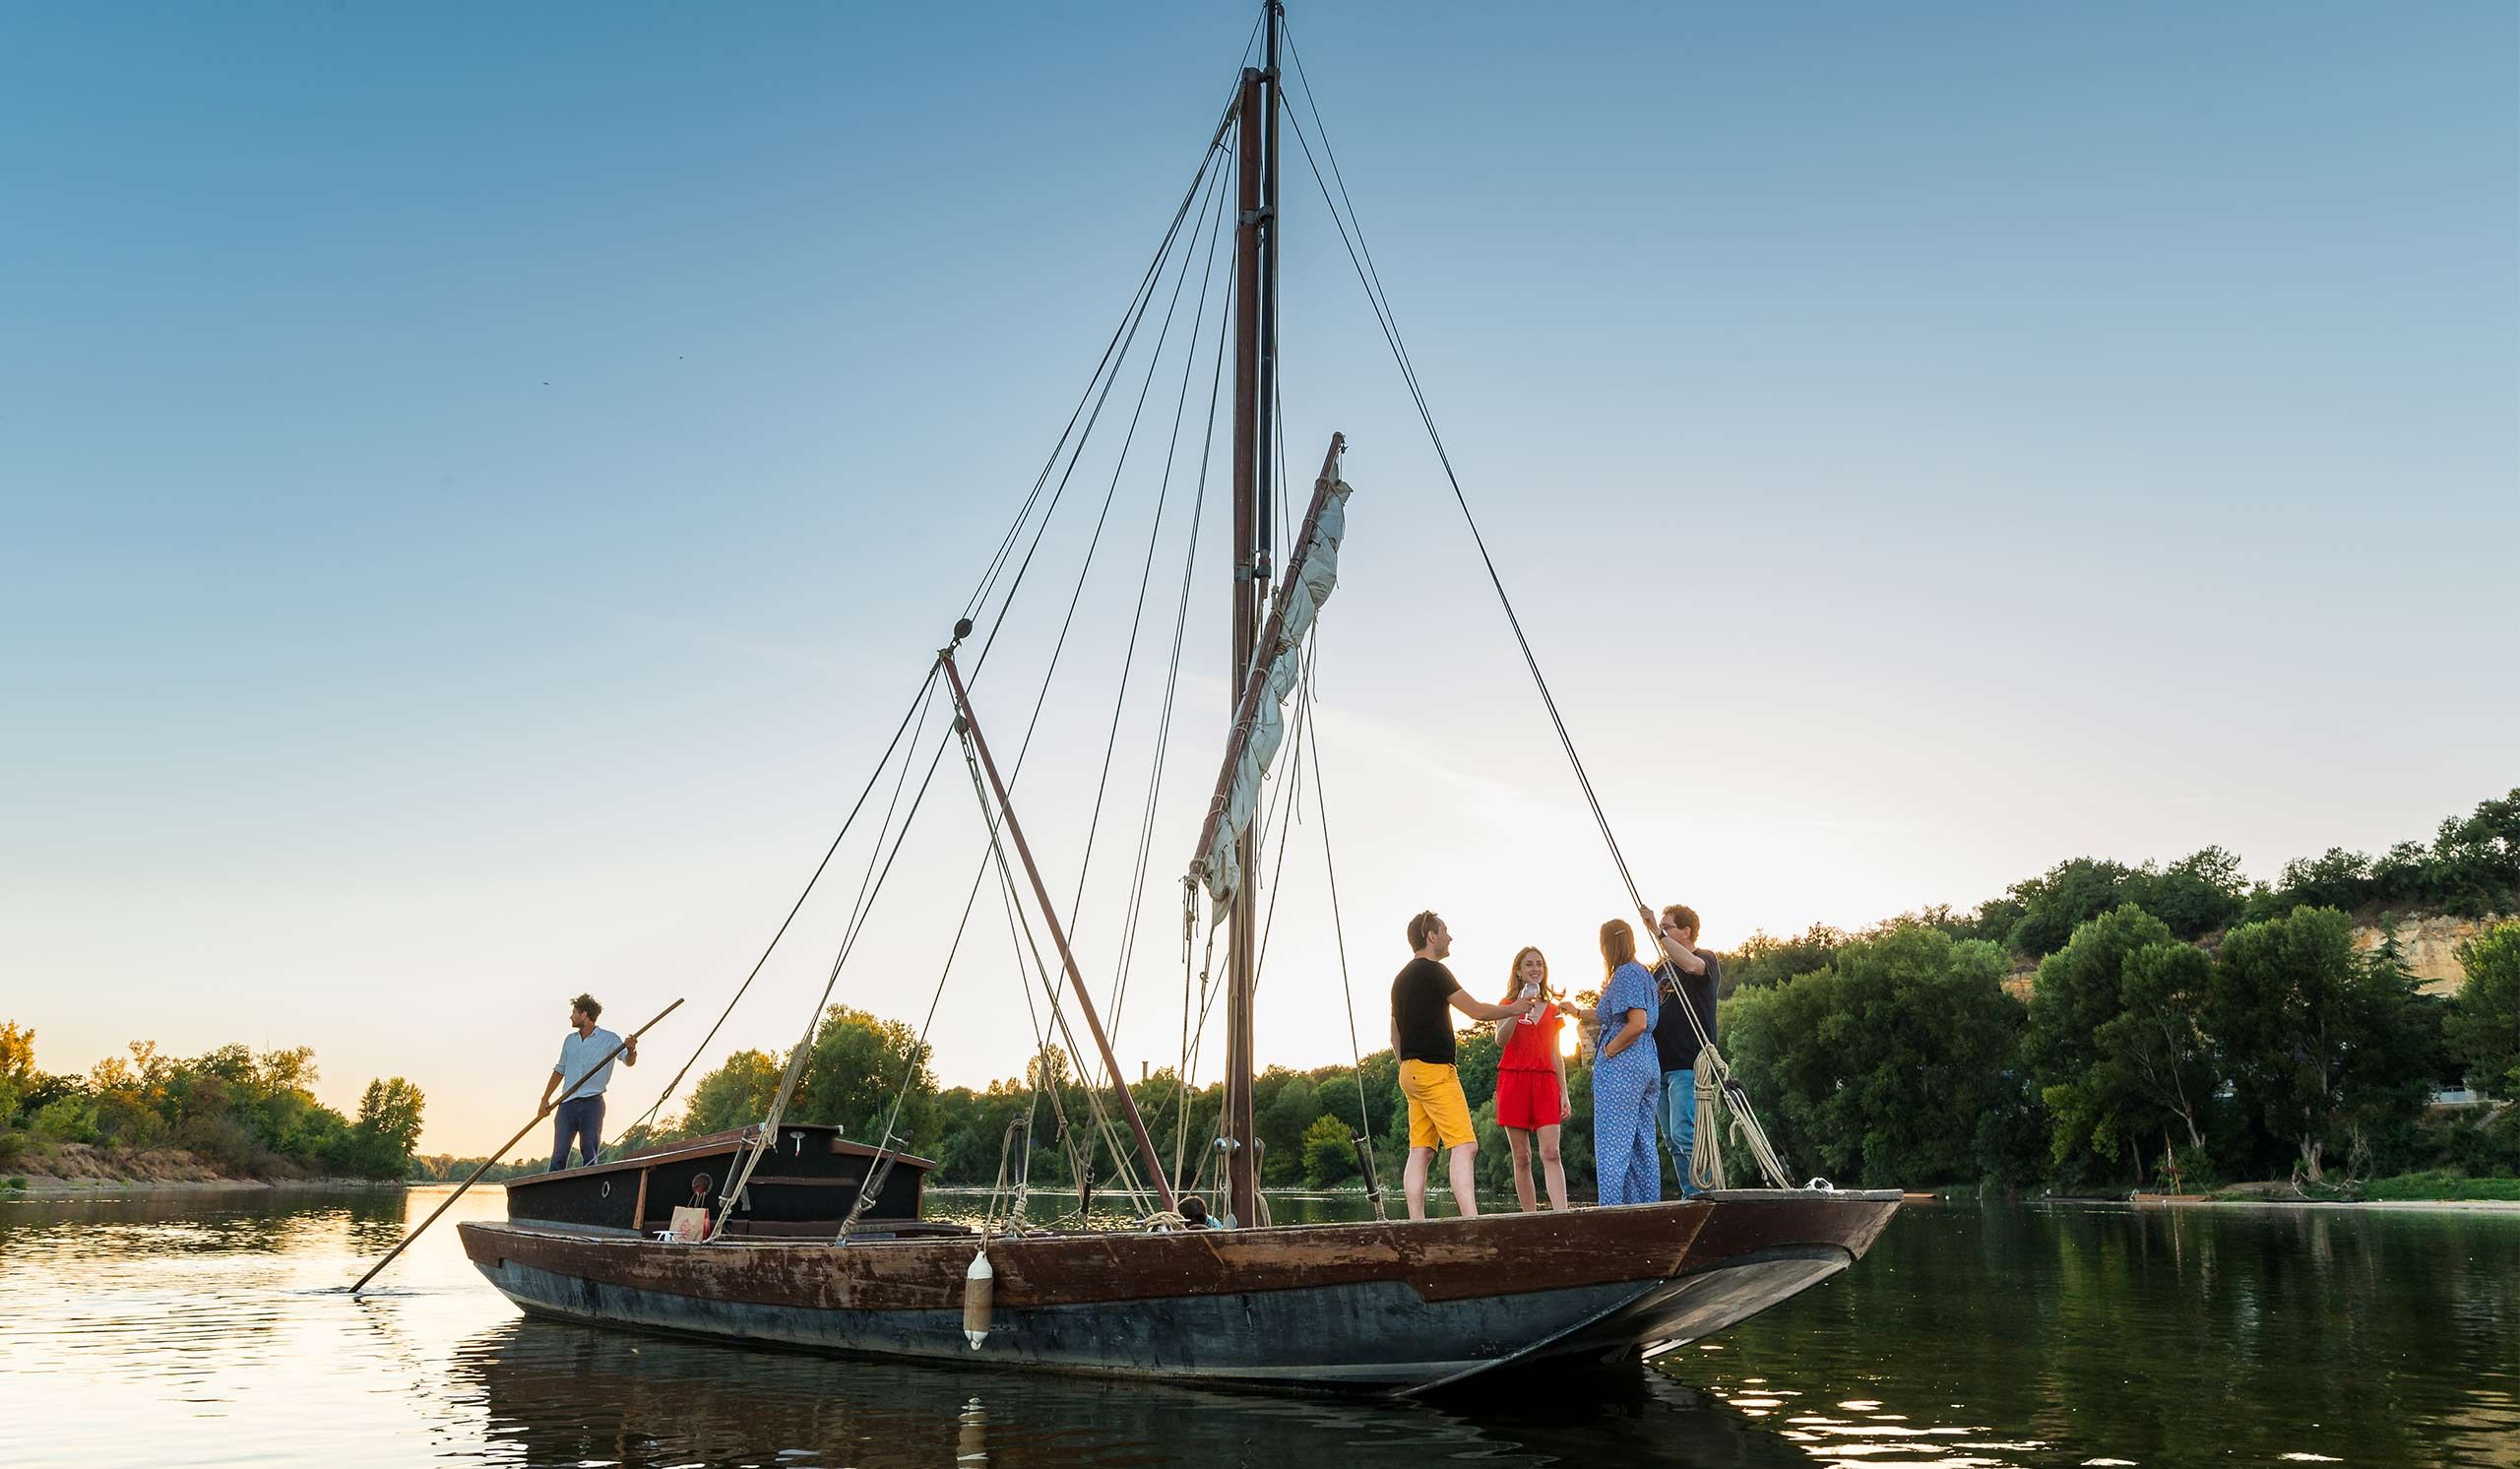 Balade en bateau traditionnel sur la Loire